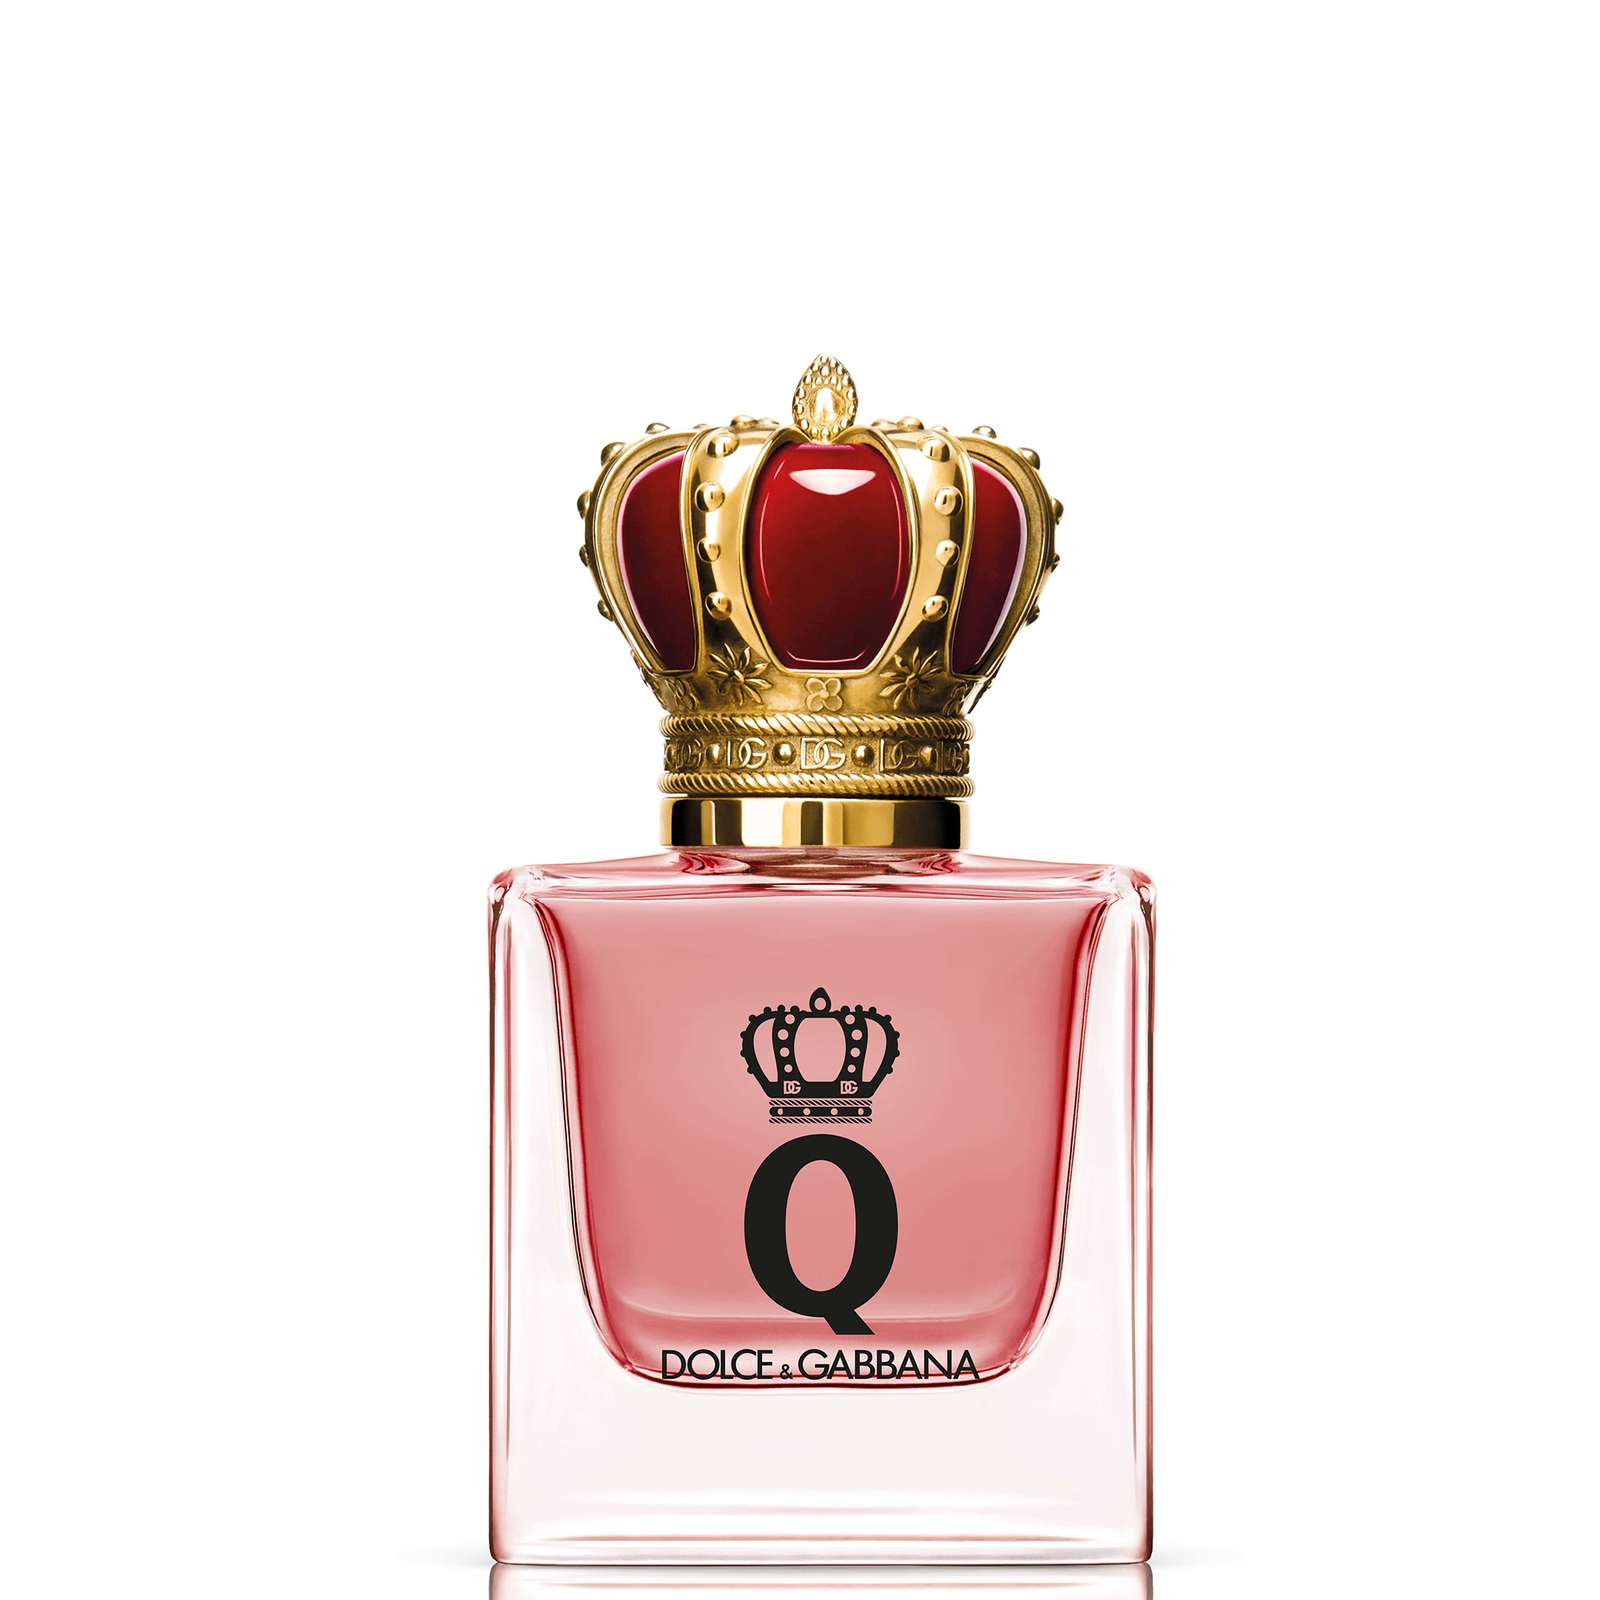 Dolce&Gabbana Q by Dolce&Gabbana Intense Eau de Parfum